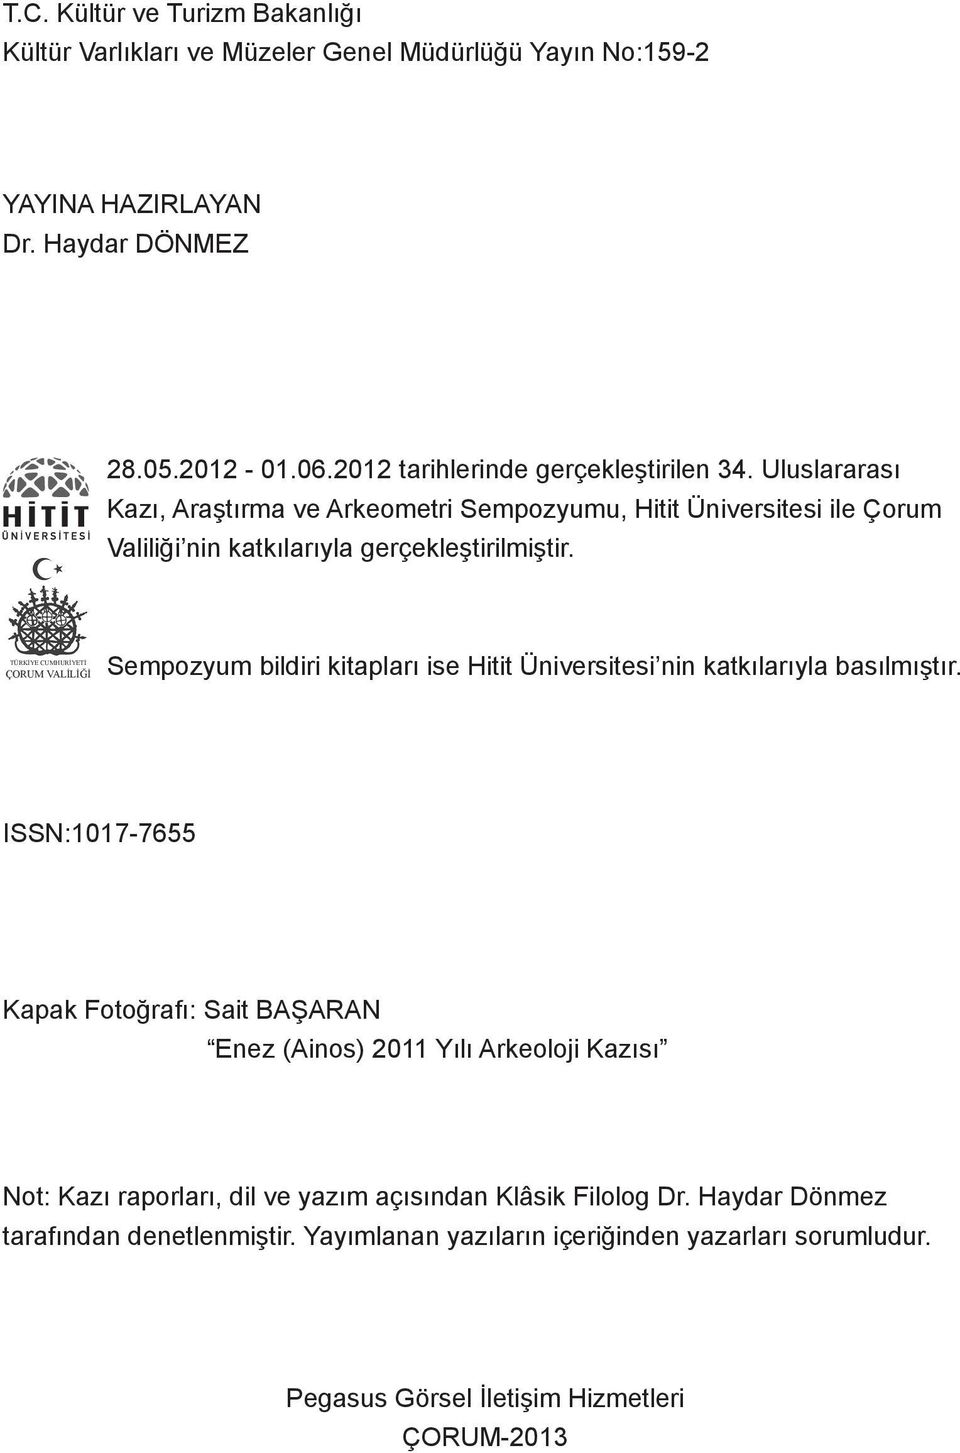 TÜRKİYE CUMHURİYETİ ÇORUM VALİLİĞİ Sempozyum bildiri kitapları ise Hitit Üniversitesi nin katkılarıyla basılmıştır.